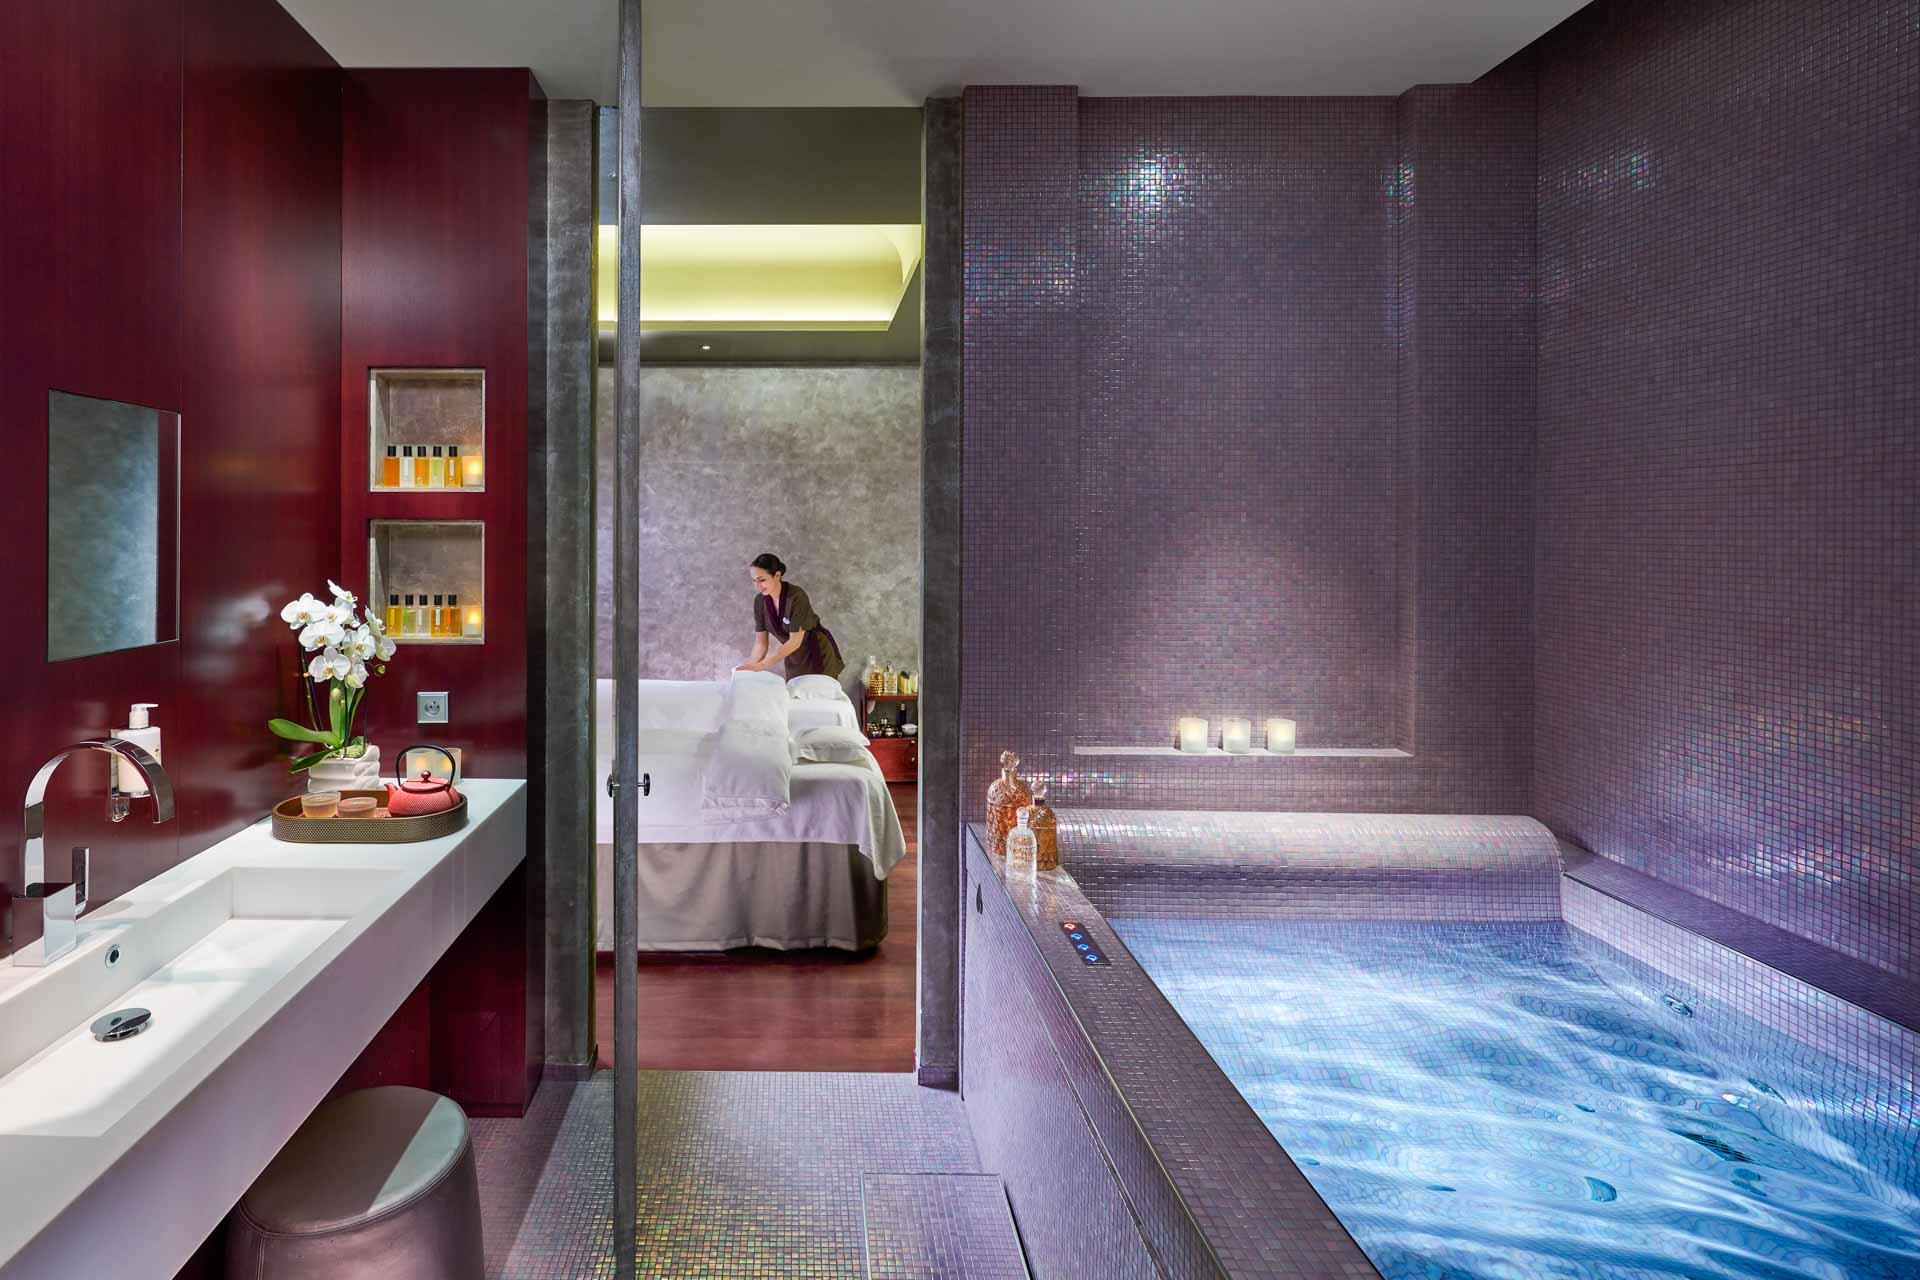 Suite de soin pour couple avec douche-hammam, vestiaire privatif et piscine revitalisante © Mandarin Oriental